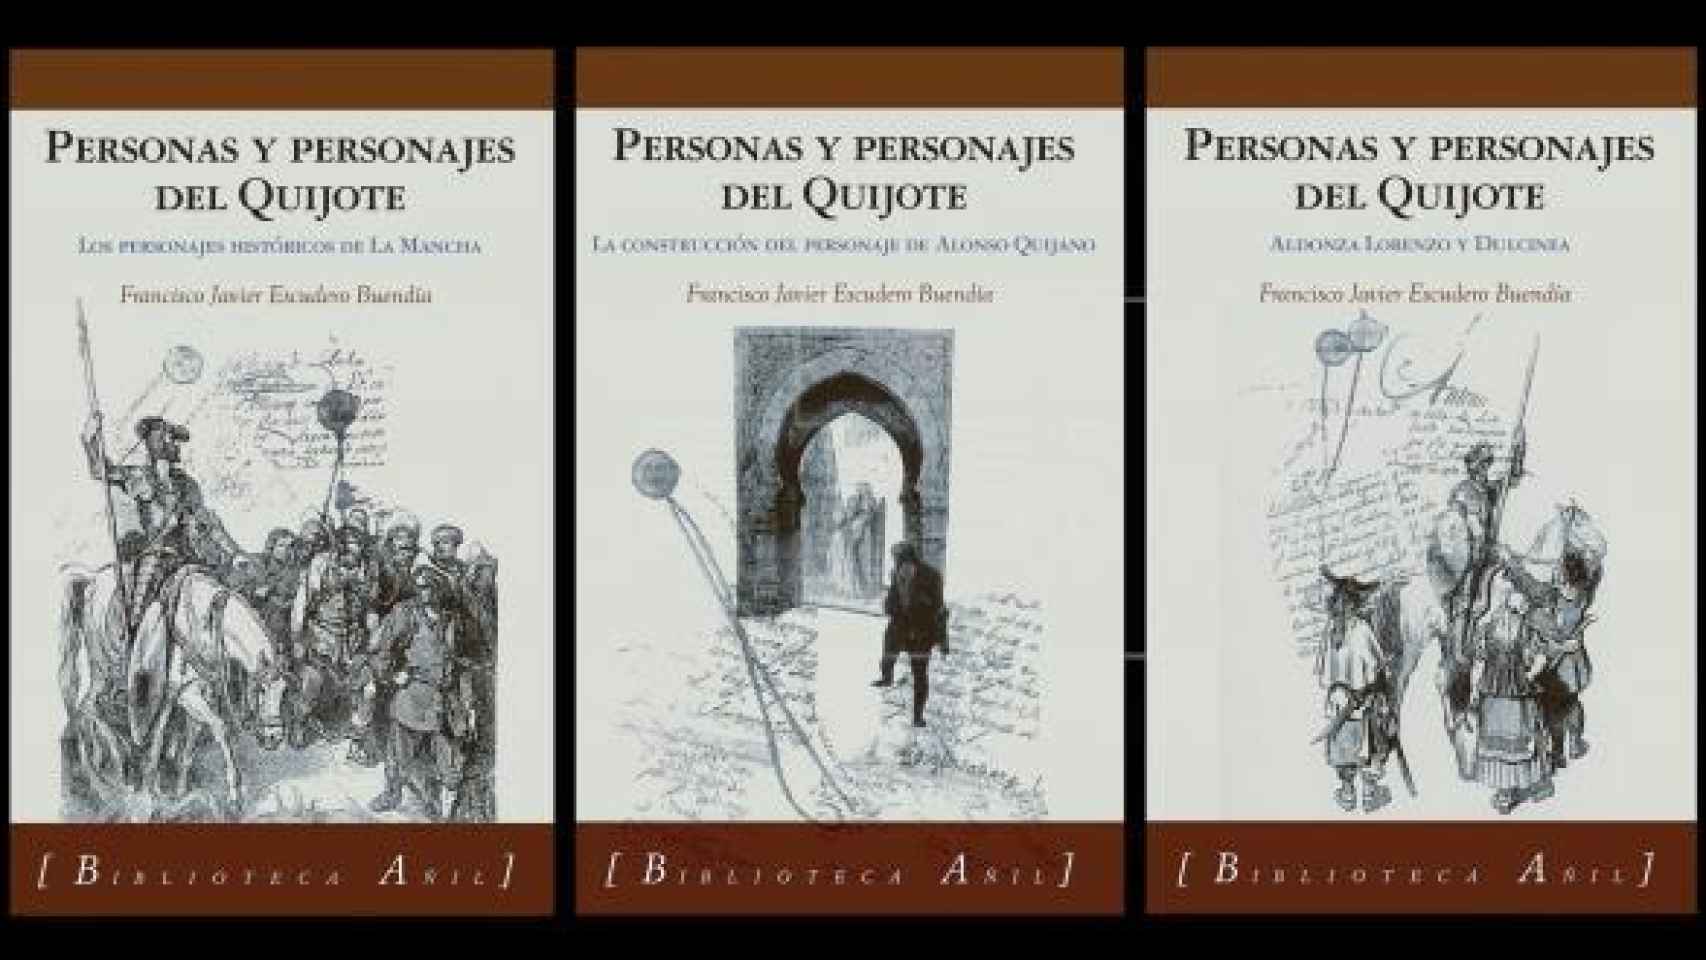 Personajes y personajes del Quijote.